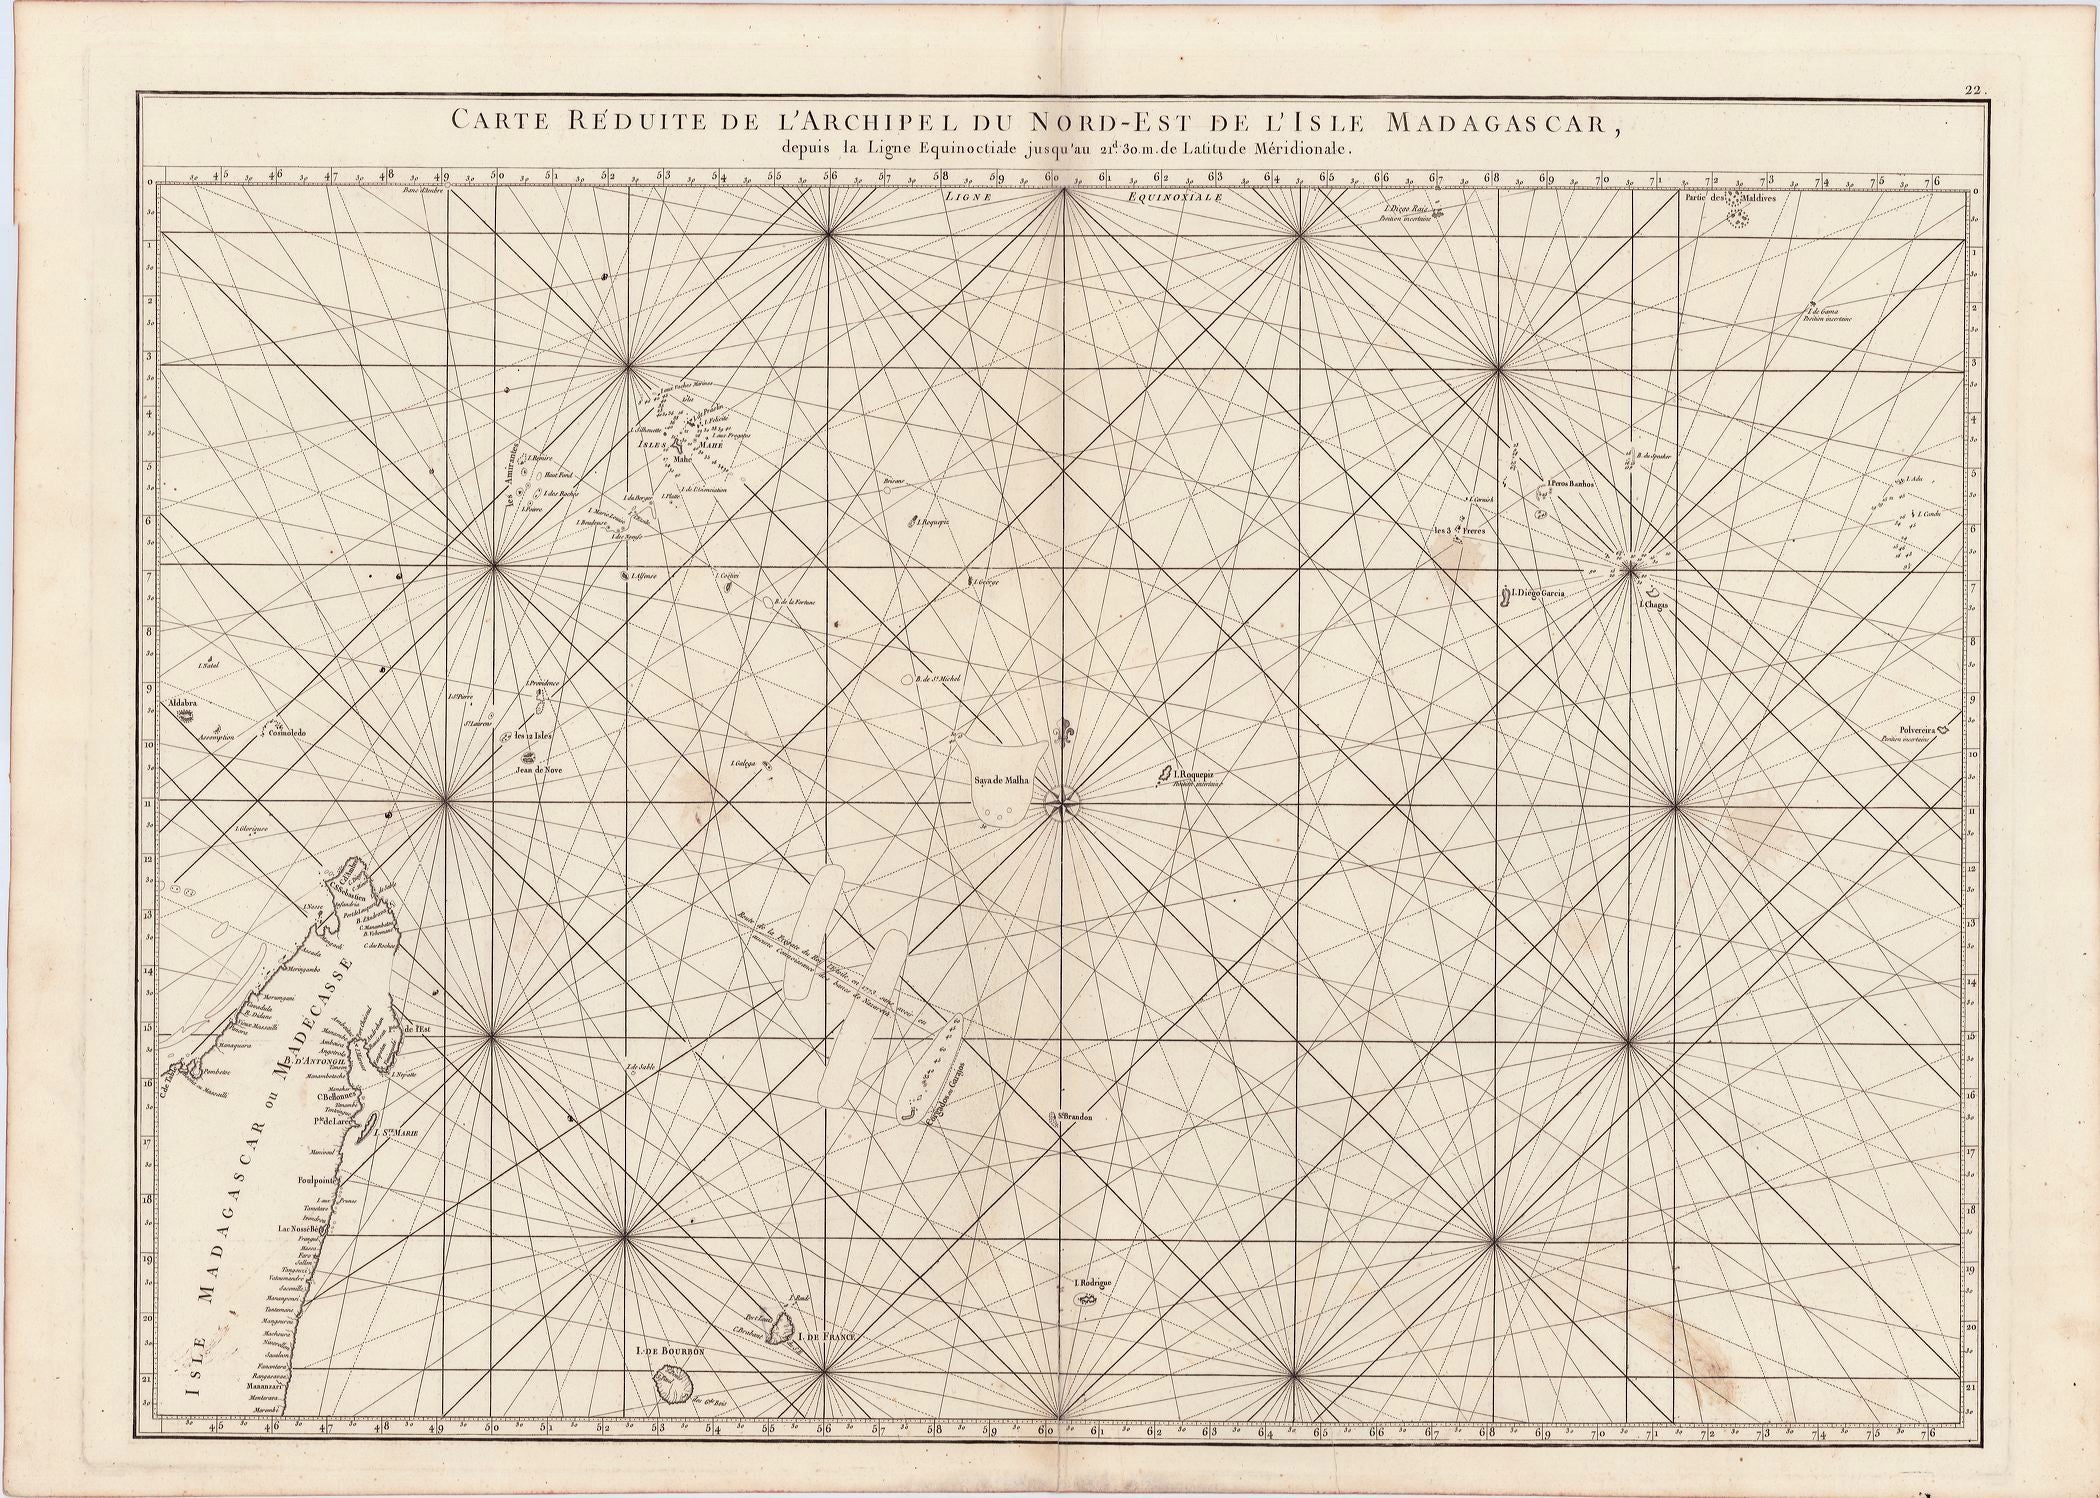 4047  Mannevillette, Jean Baptiste: Carte reduite de l'Archipel du Nord-Est de l'Isle Madagascar 1775